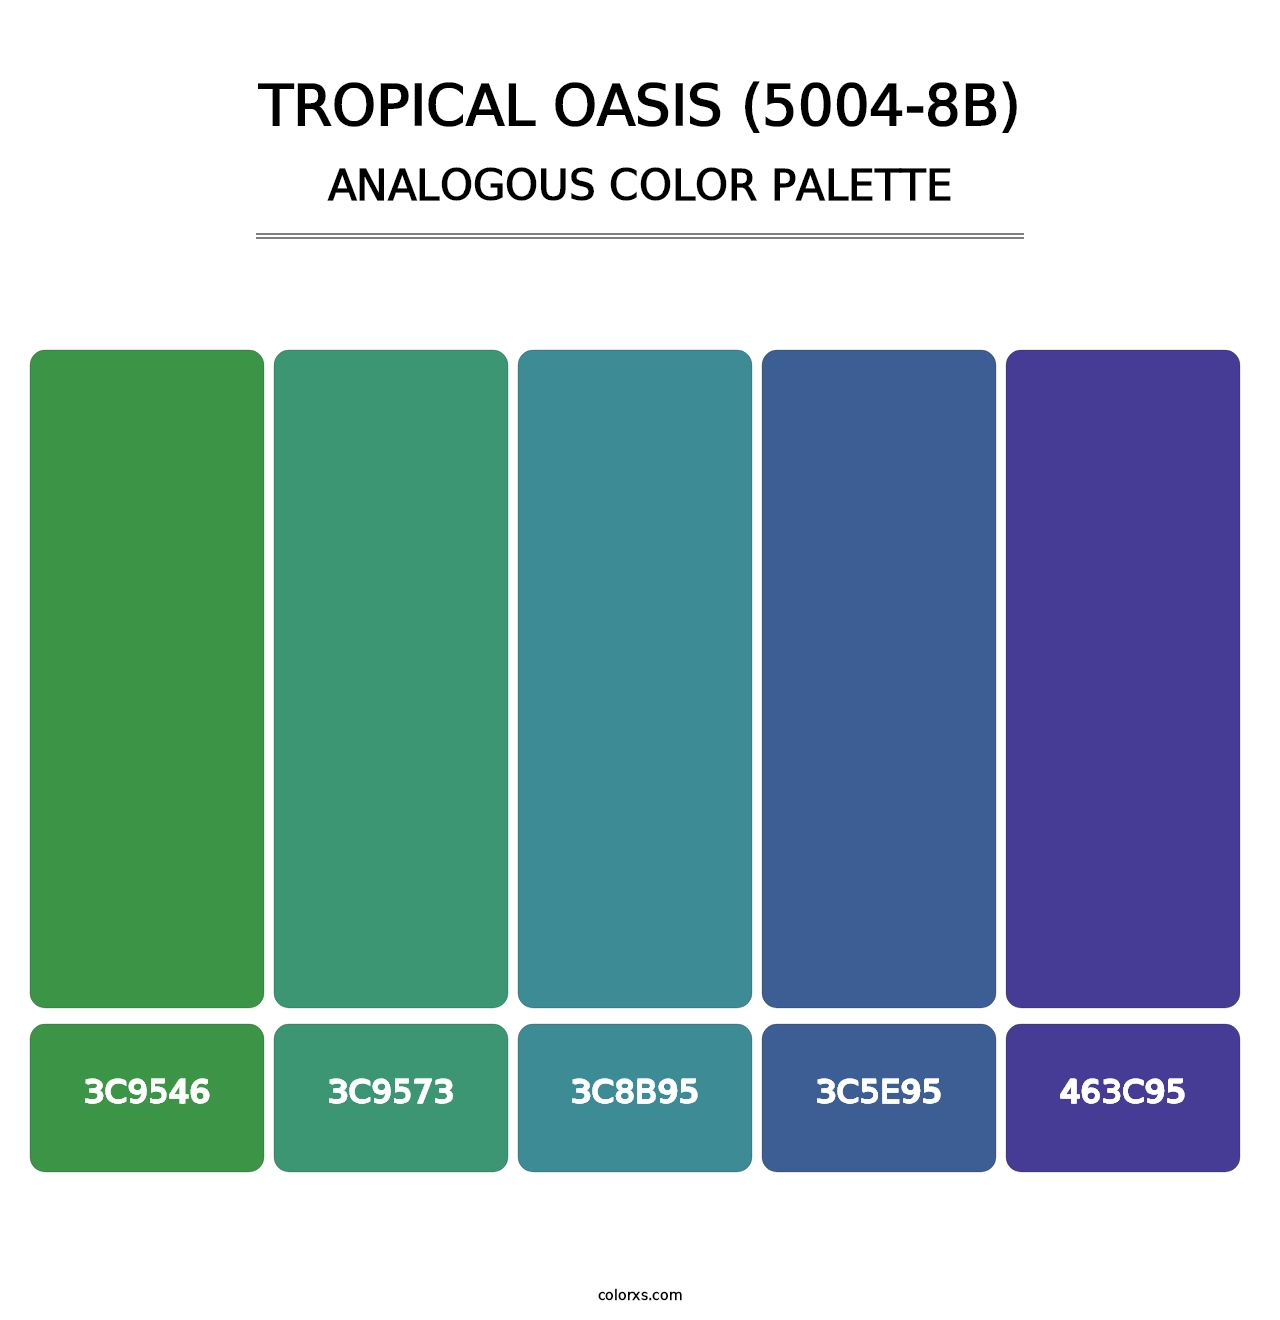 Tropical Oasis (5004-8B) - Analogous Color Palette